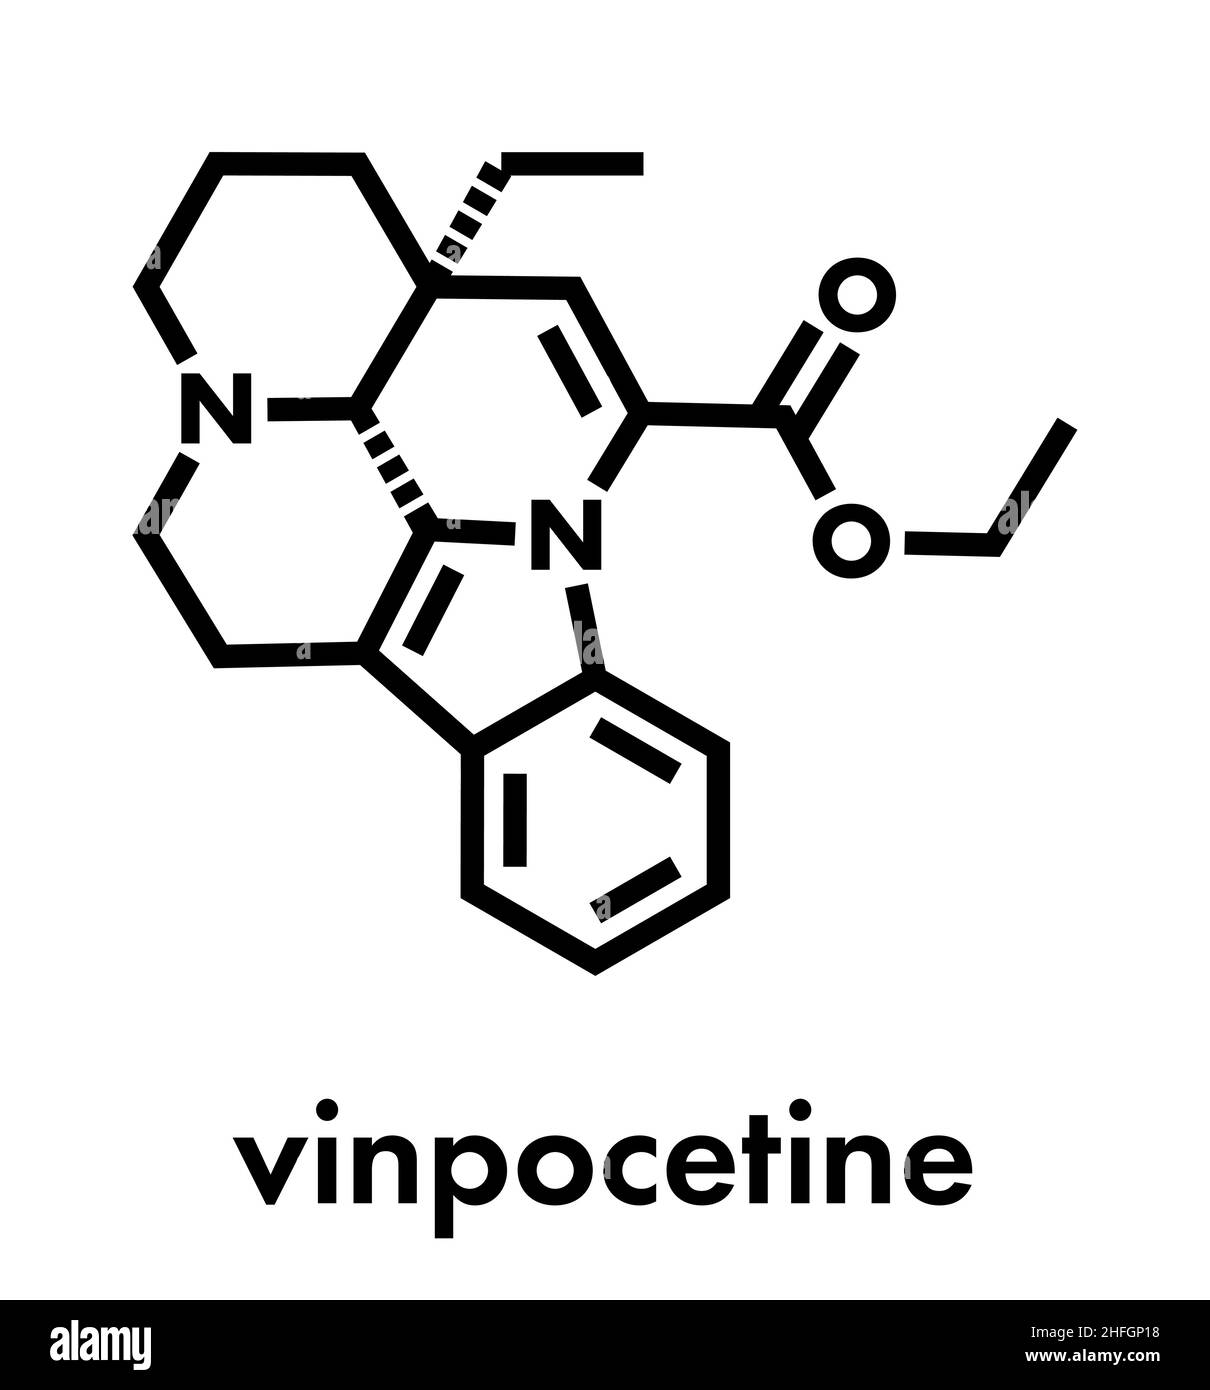 Molécule de vinpocétine.Dérivé alcaloïde de vinca semi-synthétique, utilisé comme médicament et comme supplément alimentaire.Formule squelettique. Illustration de Vecteur